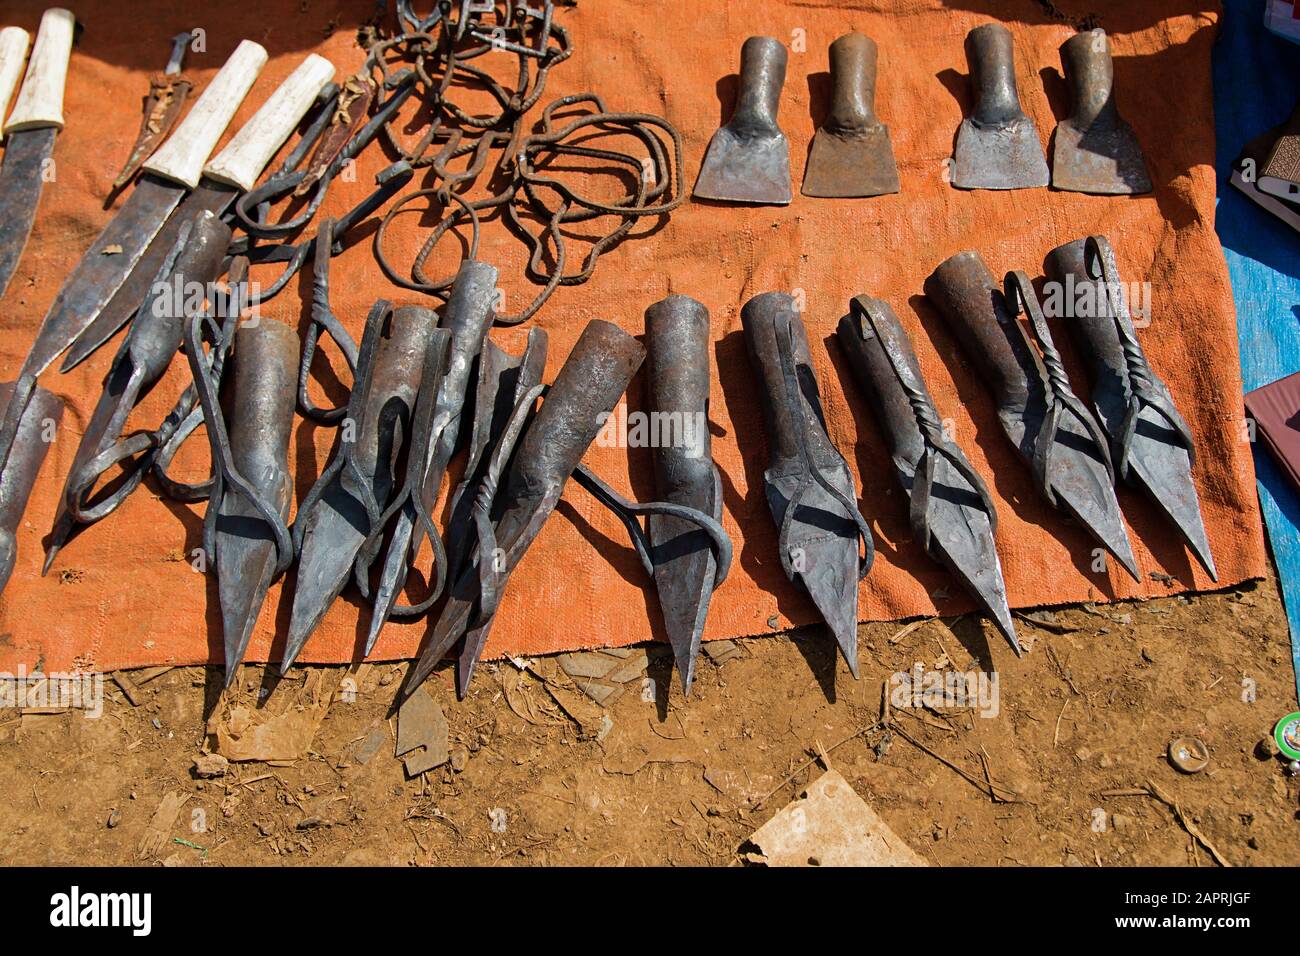 Le fer a fait des outils de travail agricoles sur le marché local de Bonga, dans la région de Kaffa, en Ethiopie Banque D'Images